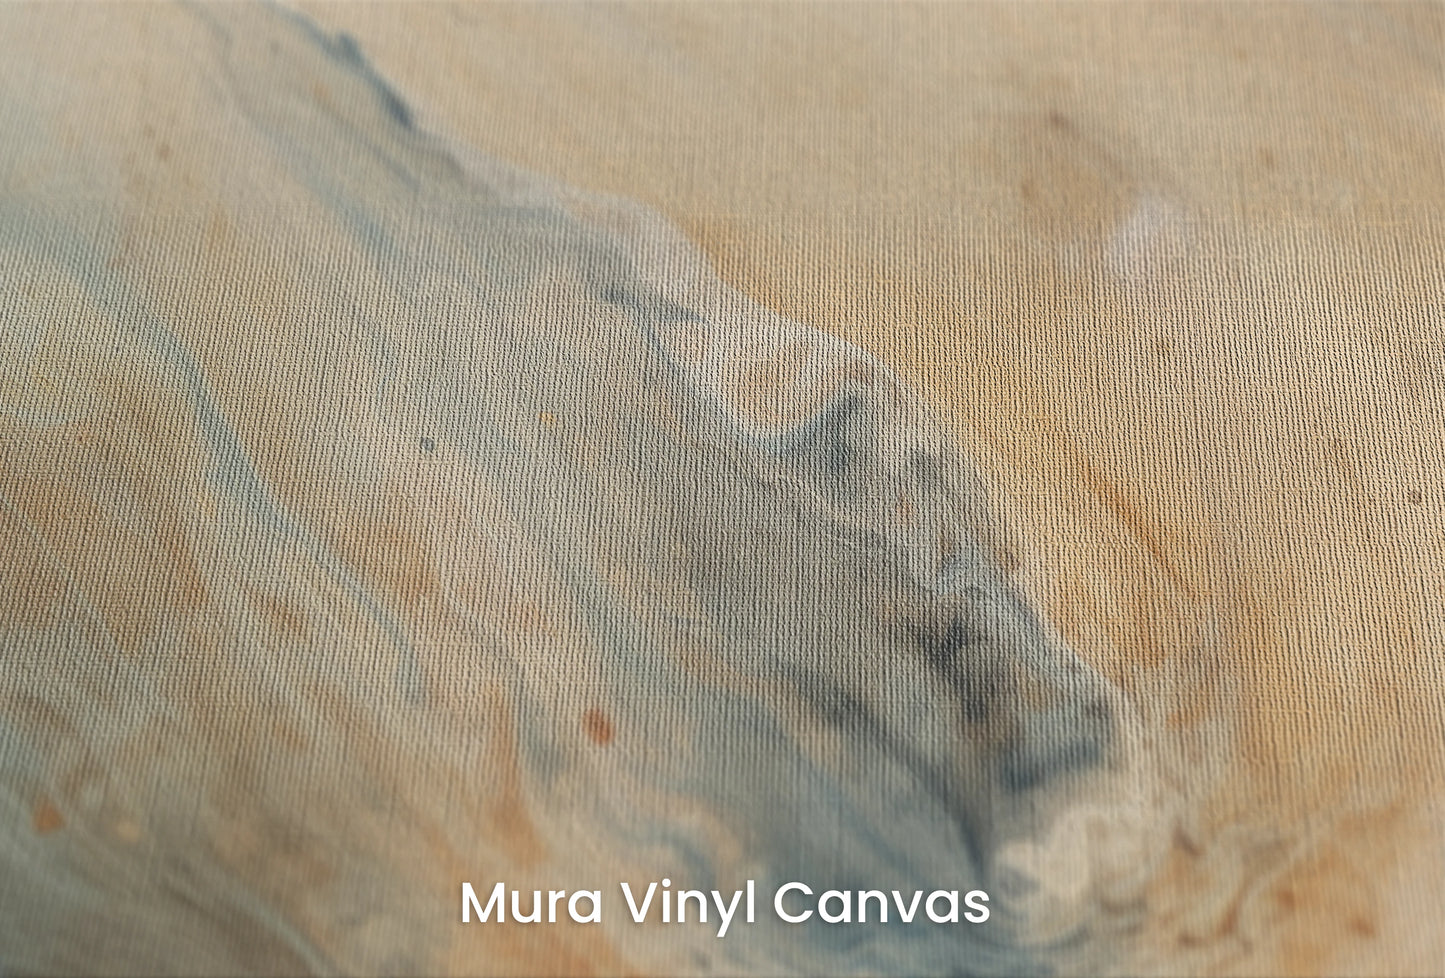 Zbliżenie na artystyczną fototapetę o nazwie Jupiter's Storm #2 na podłożu Mura Vinyl Canvas - faktura naturalnego płótna.